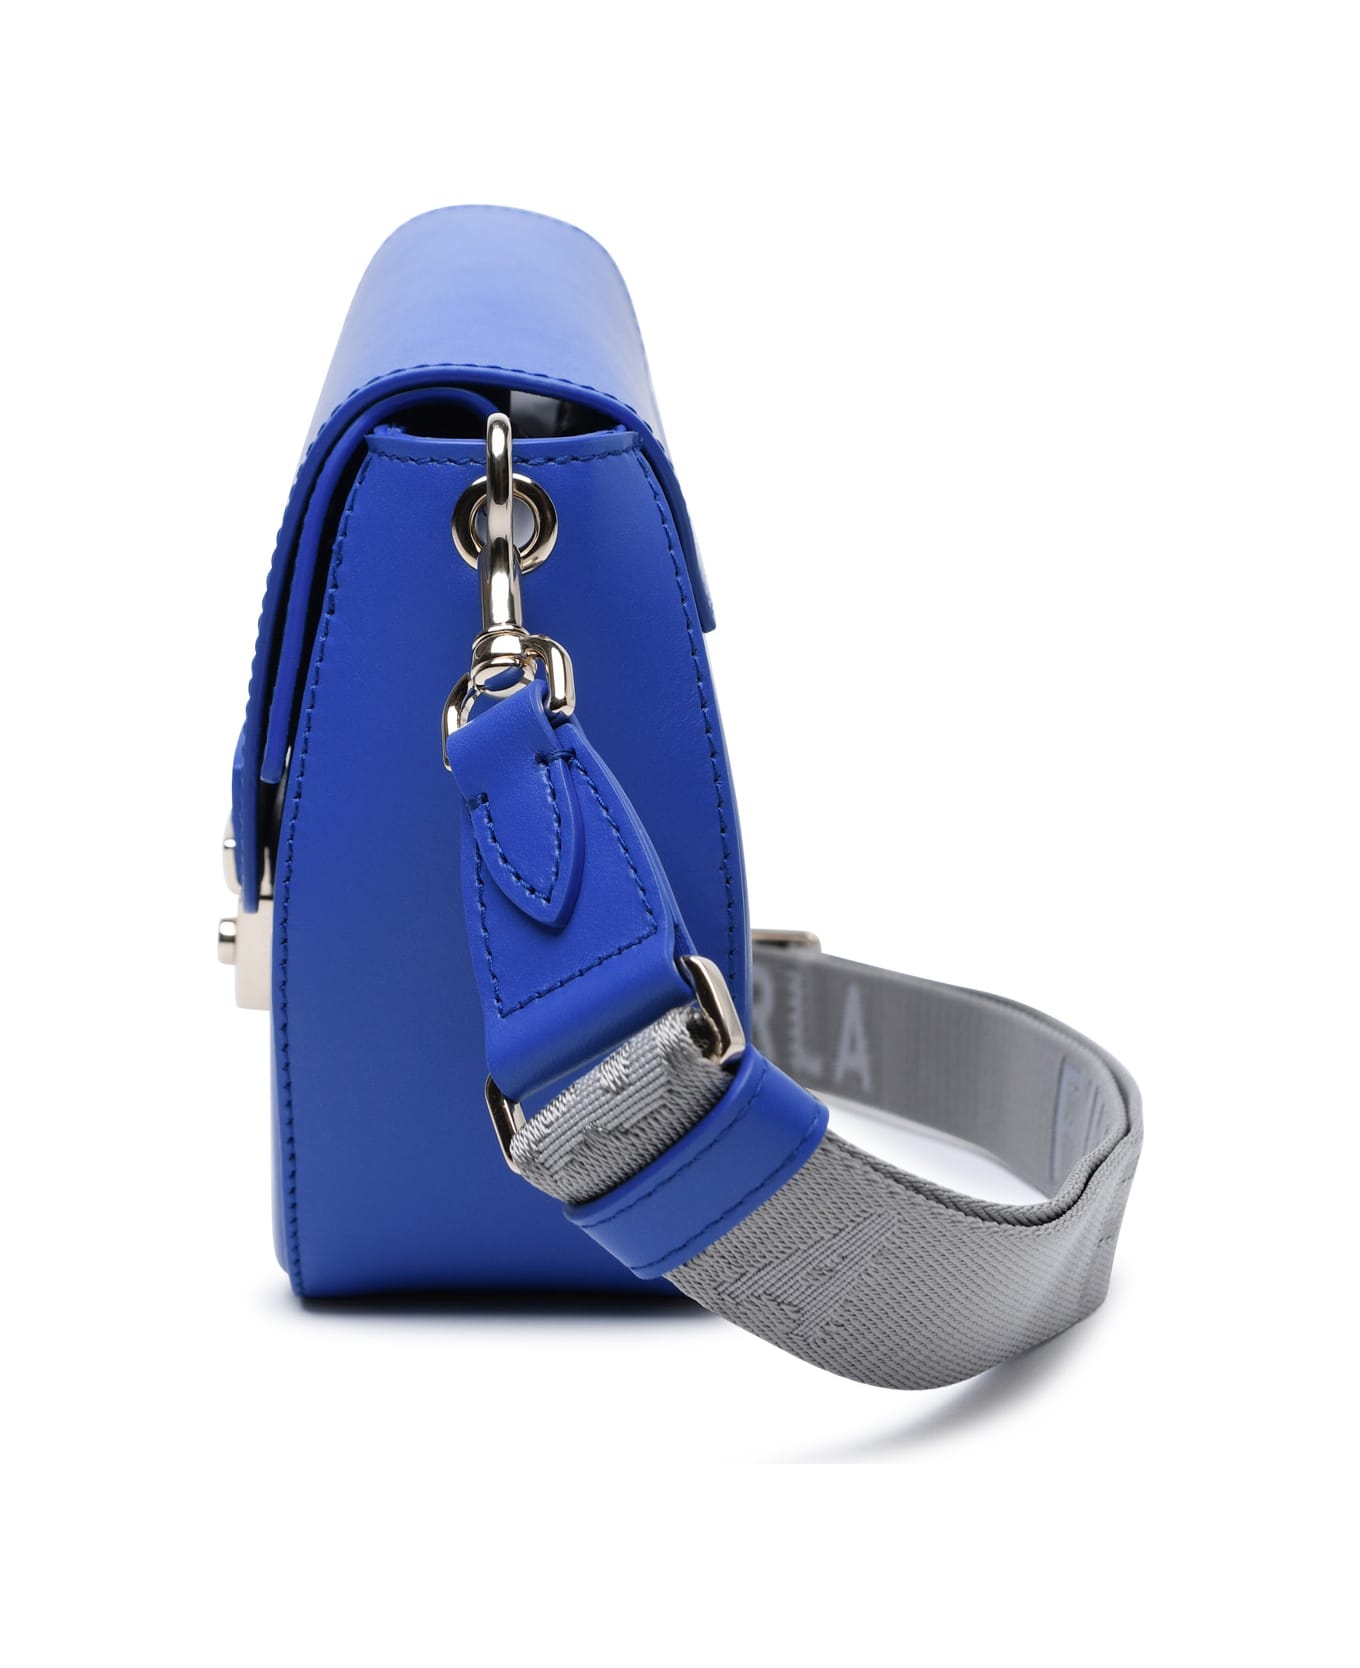 Furla 'metropolis Prisma' Blue Leather Blend Bag - Dolce & Gabbana Kids DG logo shoulder bag